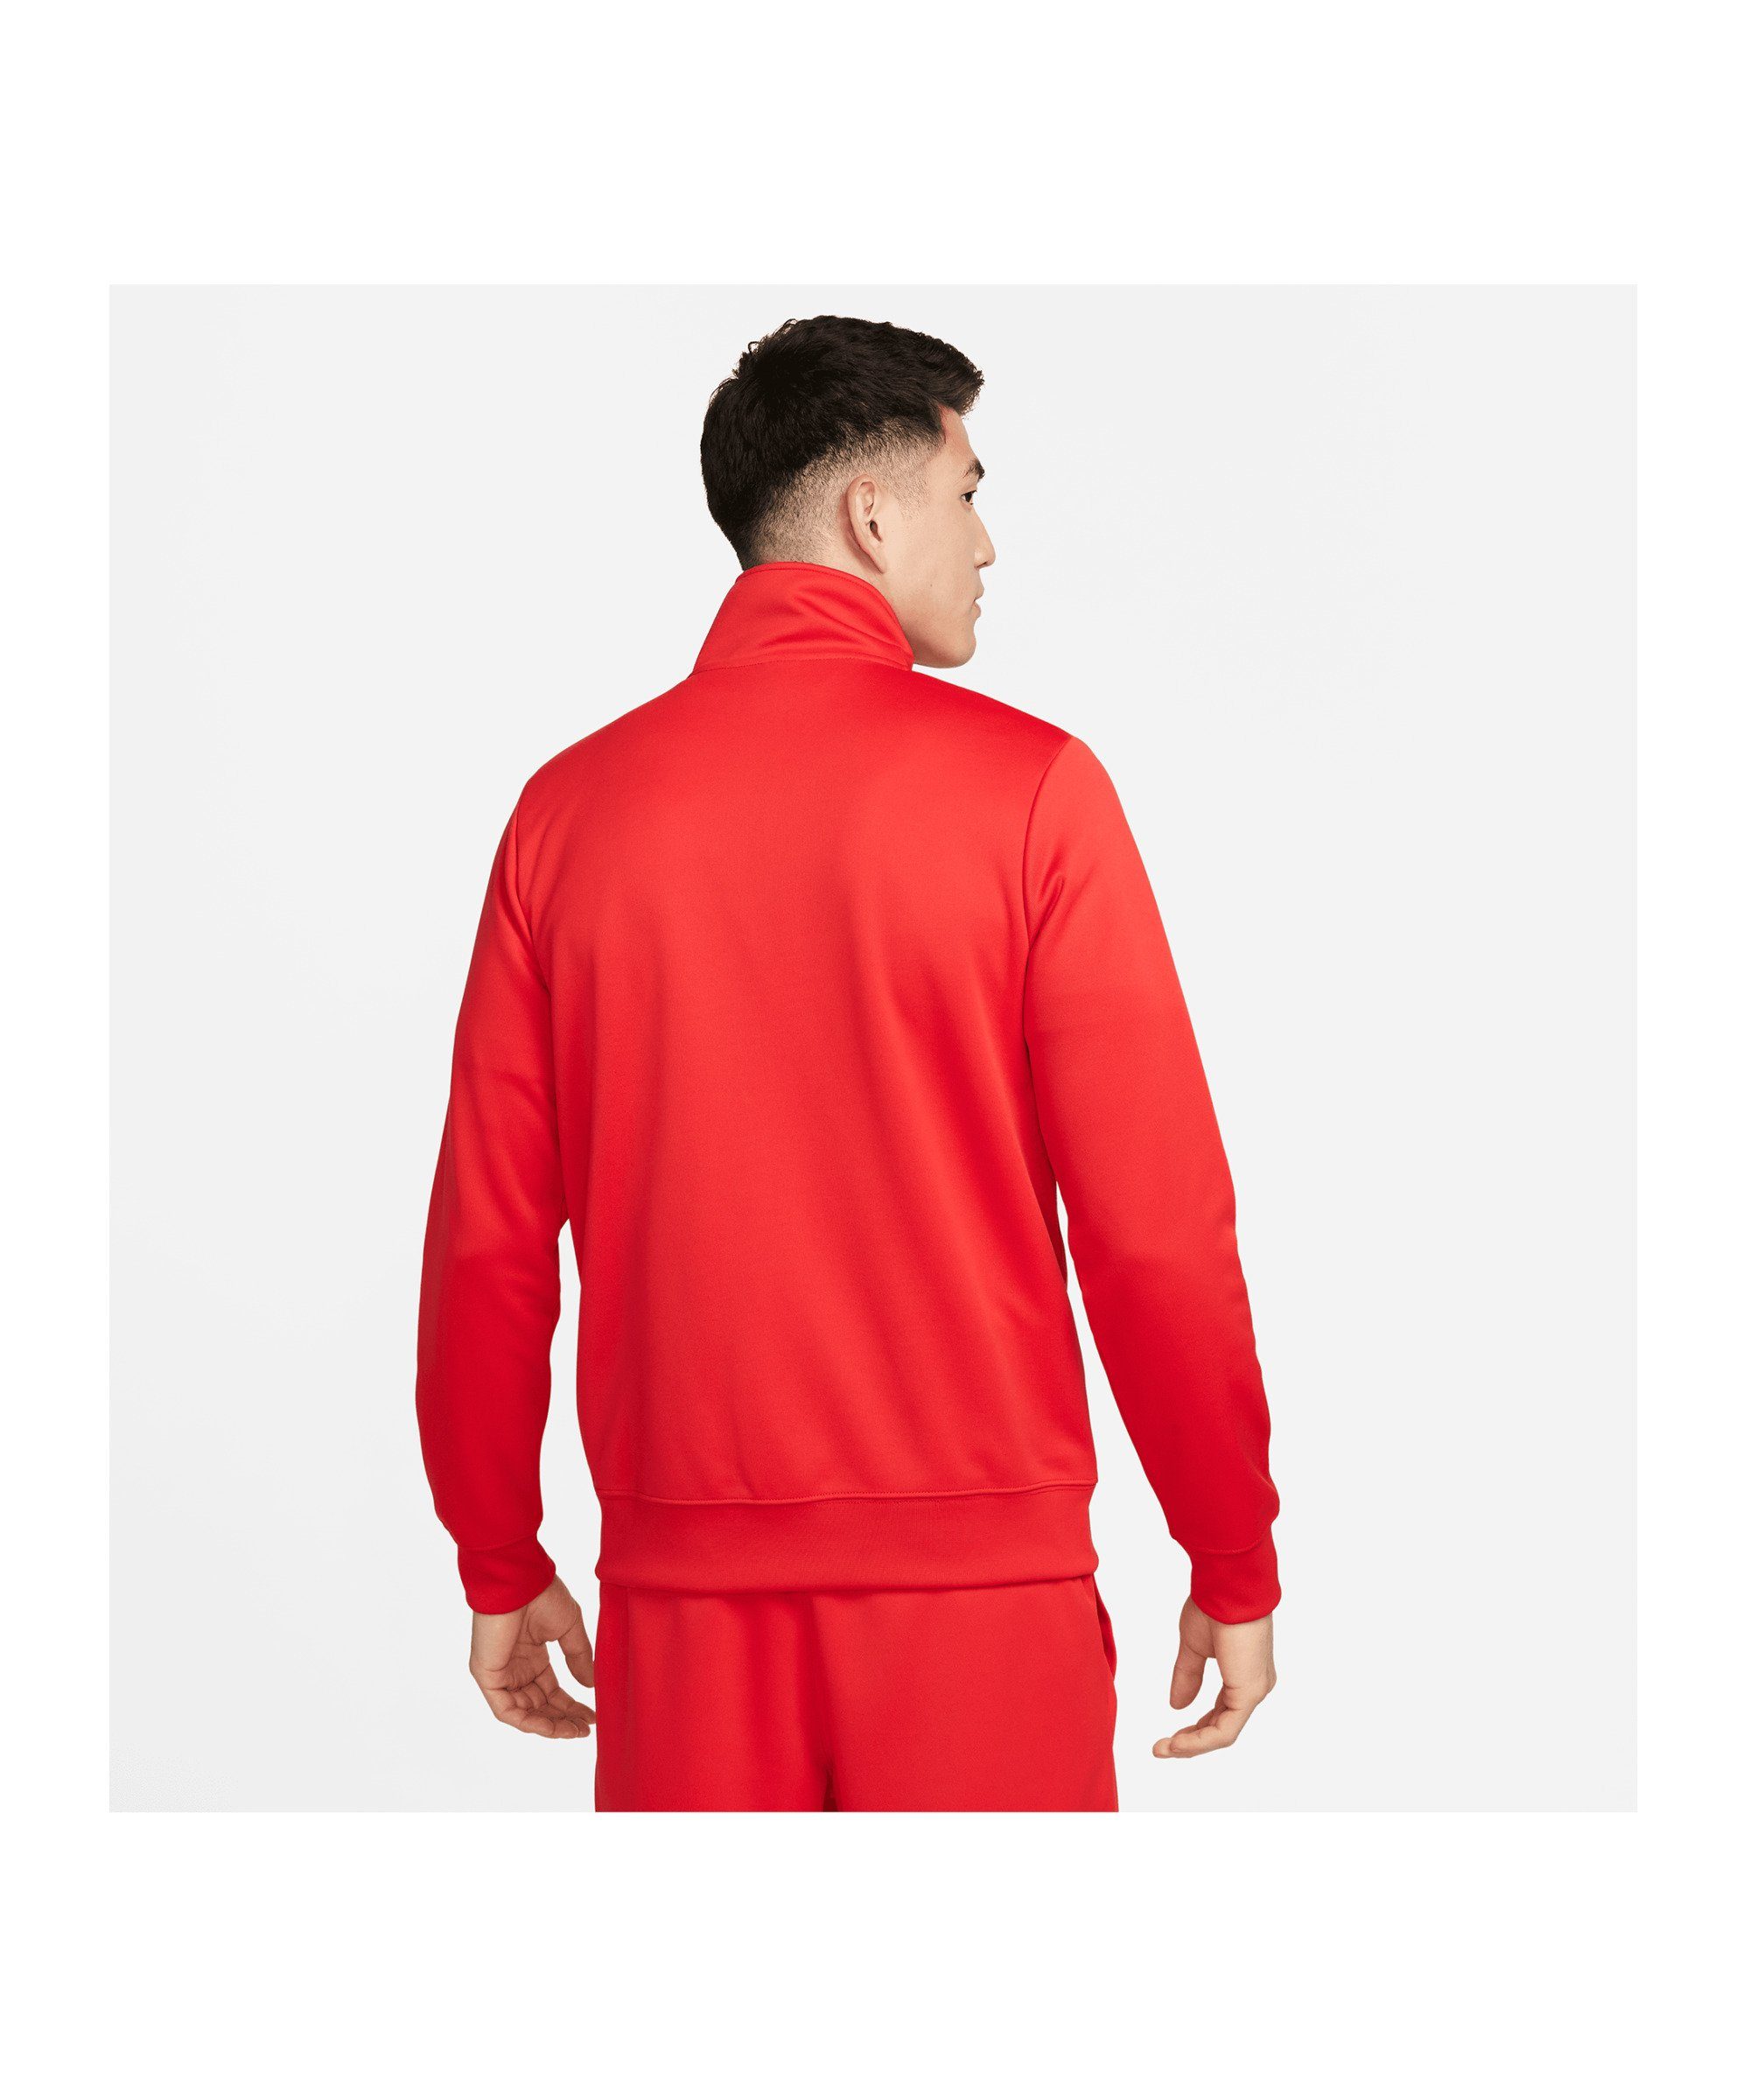 Jacke Sweatjacke Nike rot Standart Issue Sportswear